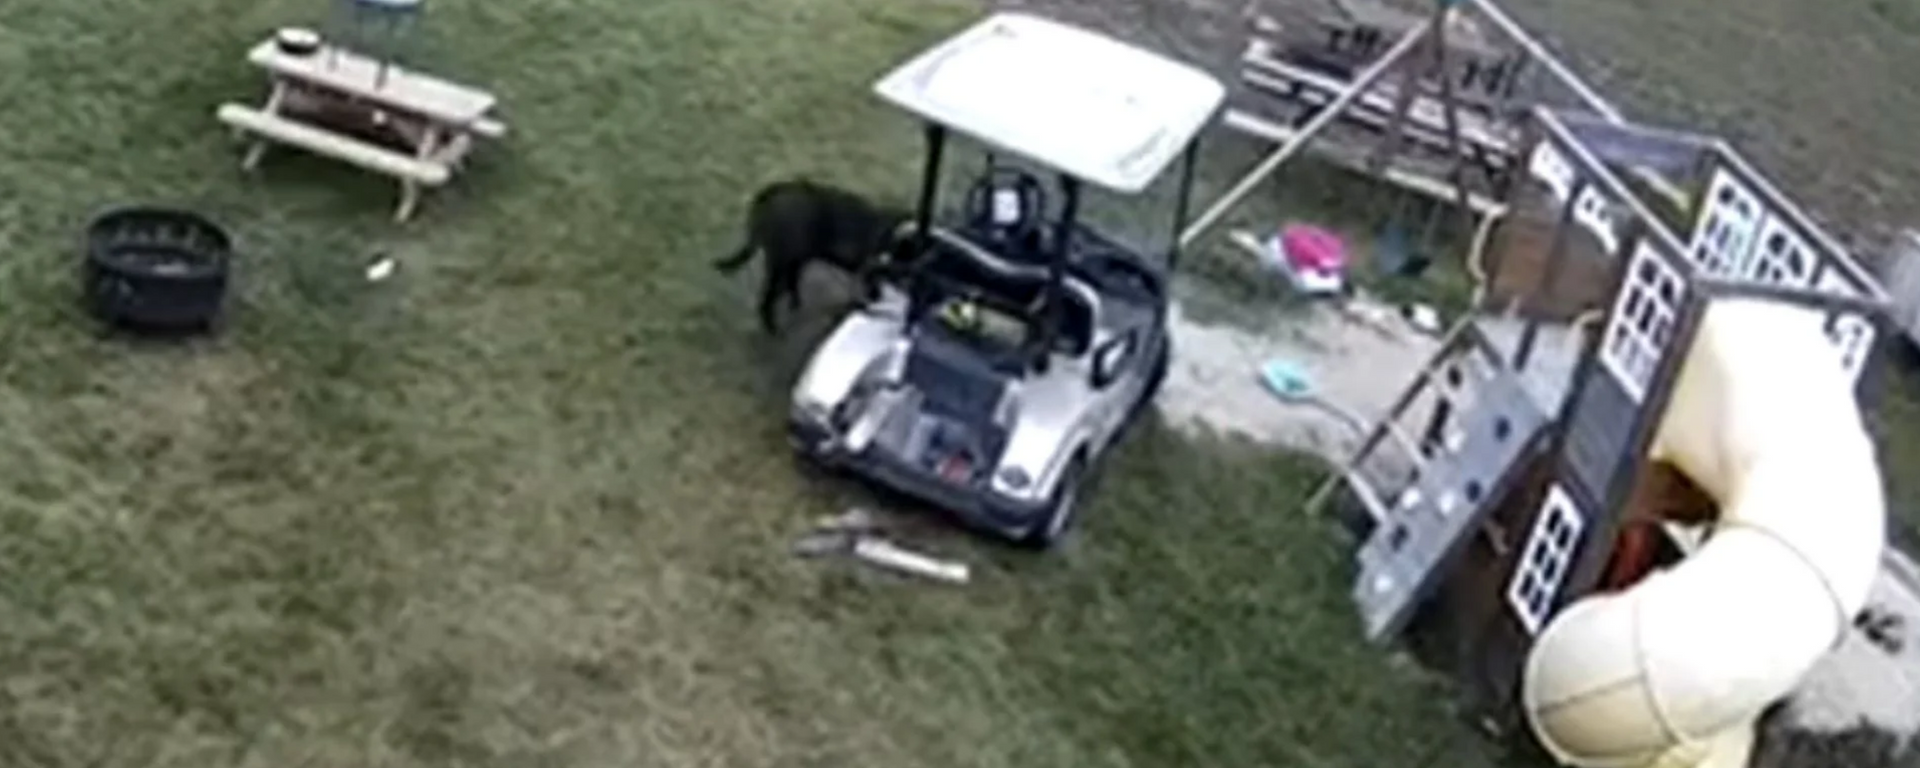 Este perrito se roba un carrito de golf, choca el auto de su humana y se va como si nada - Sputnik Mundo, 1920, 09.11.2021